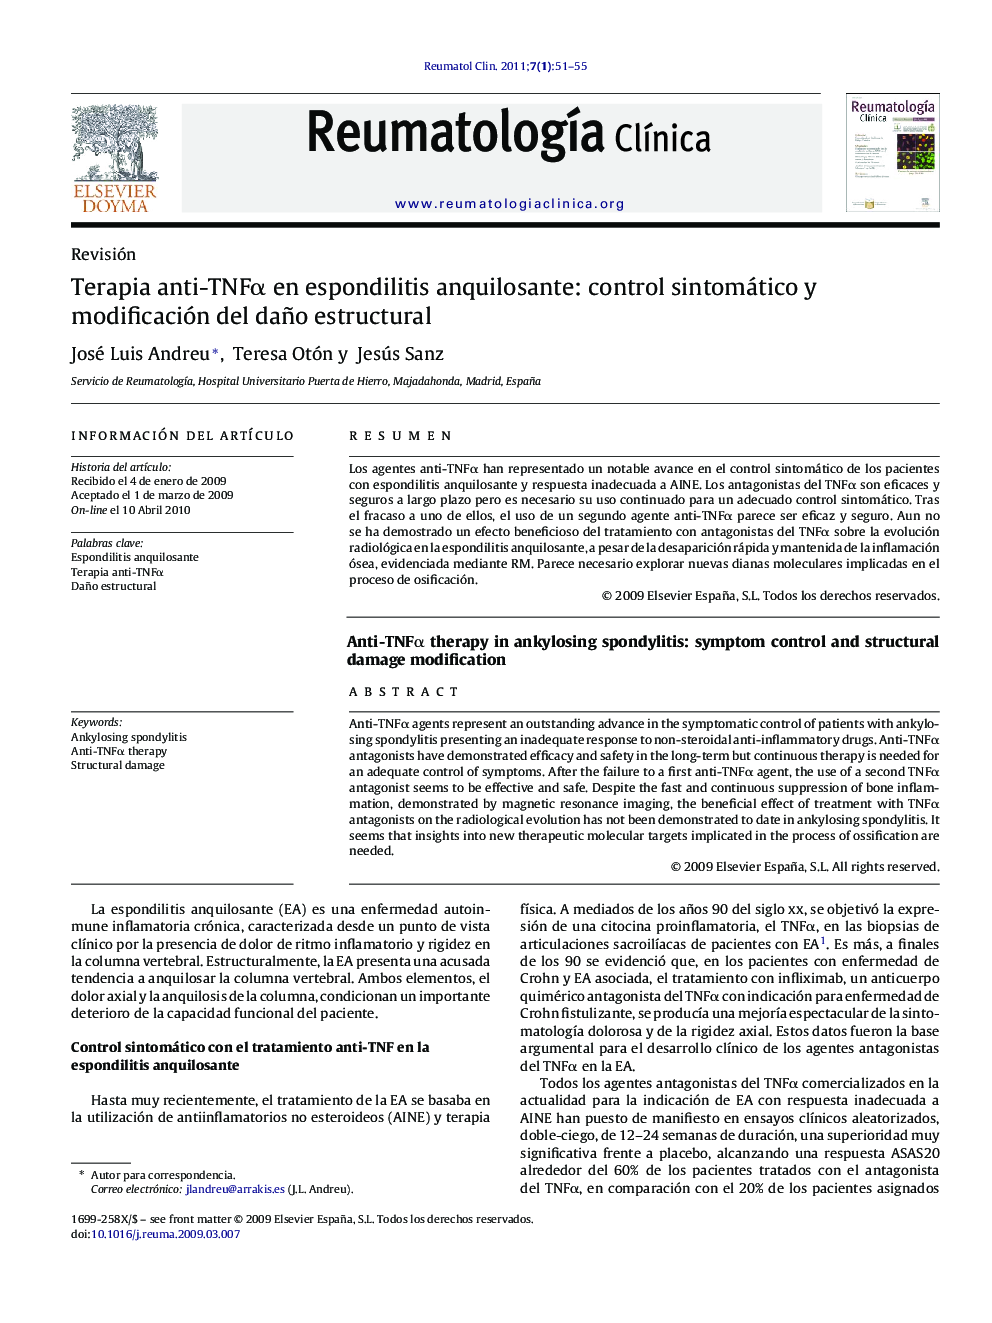 Terapia anti-TNFα en espondilitis anquilosante: control sintomático y modificación del daño estructural